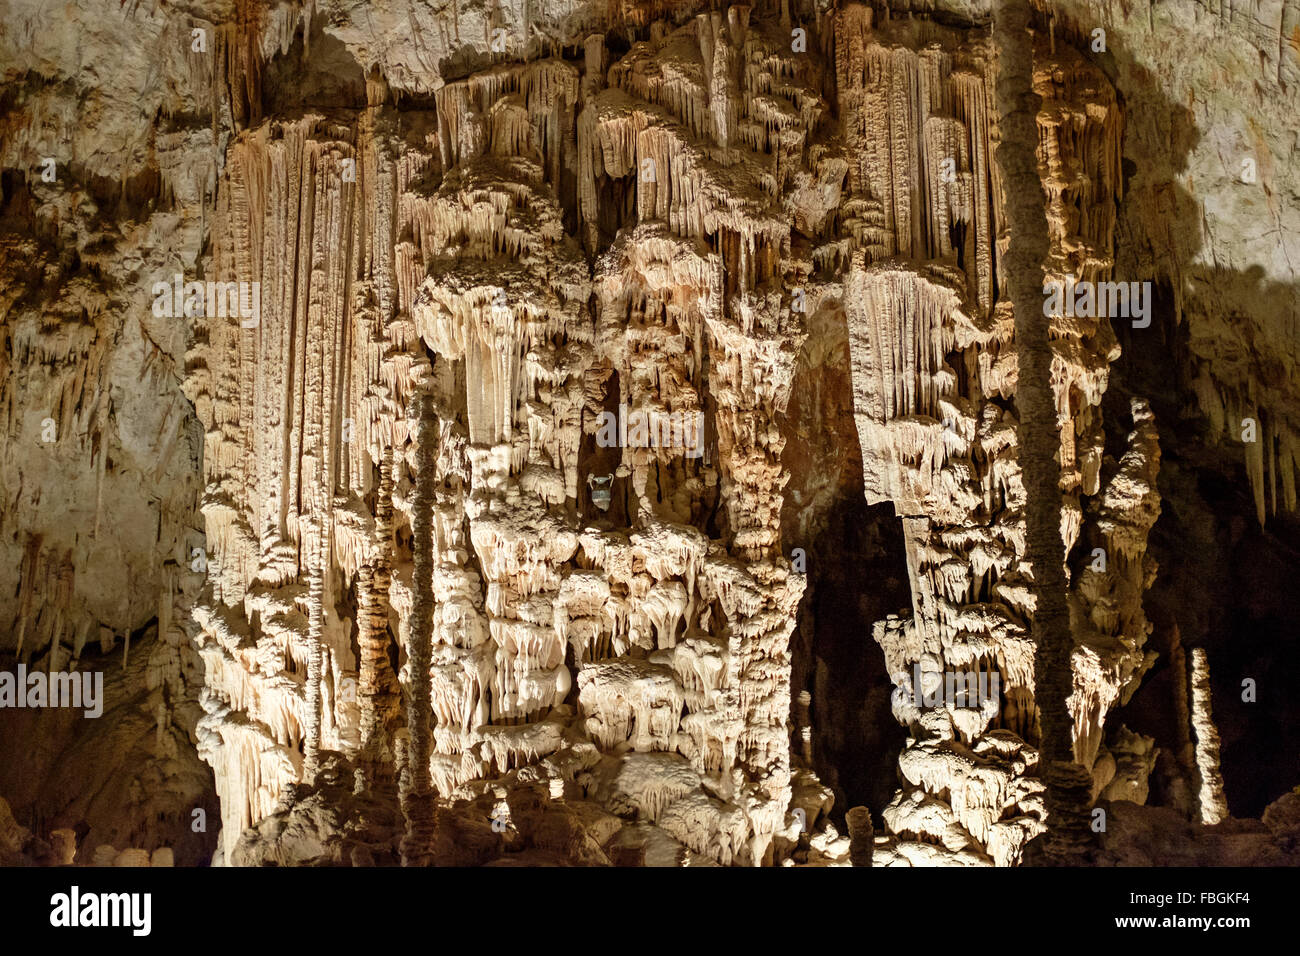 L'Aven d'Orgnac chambres souterraines et formations de cristaux dans l'Ardèche, France Banque D'Images